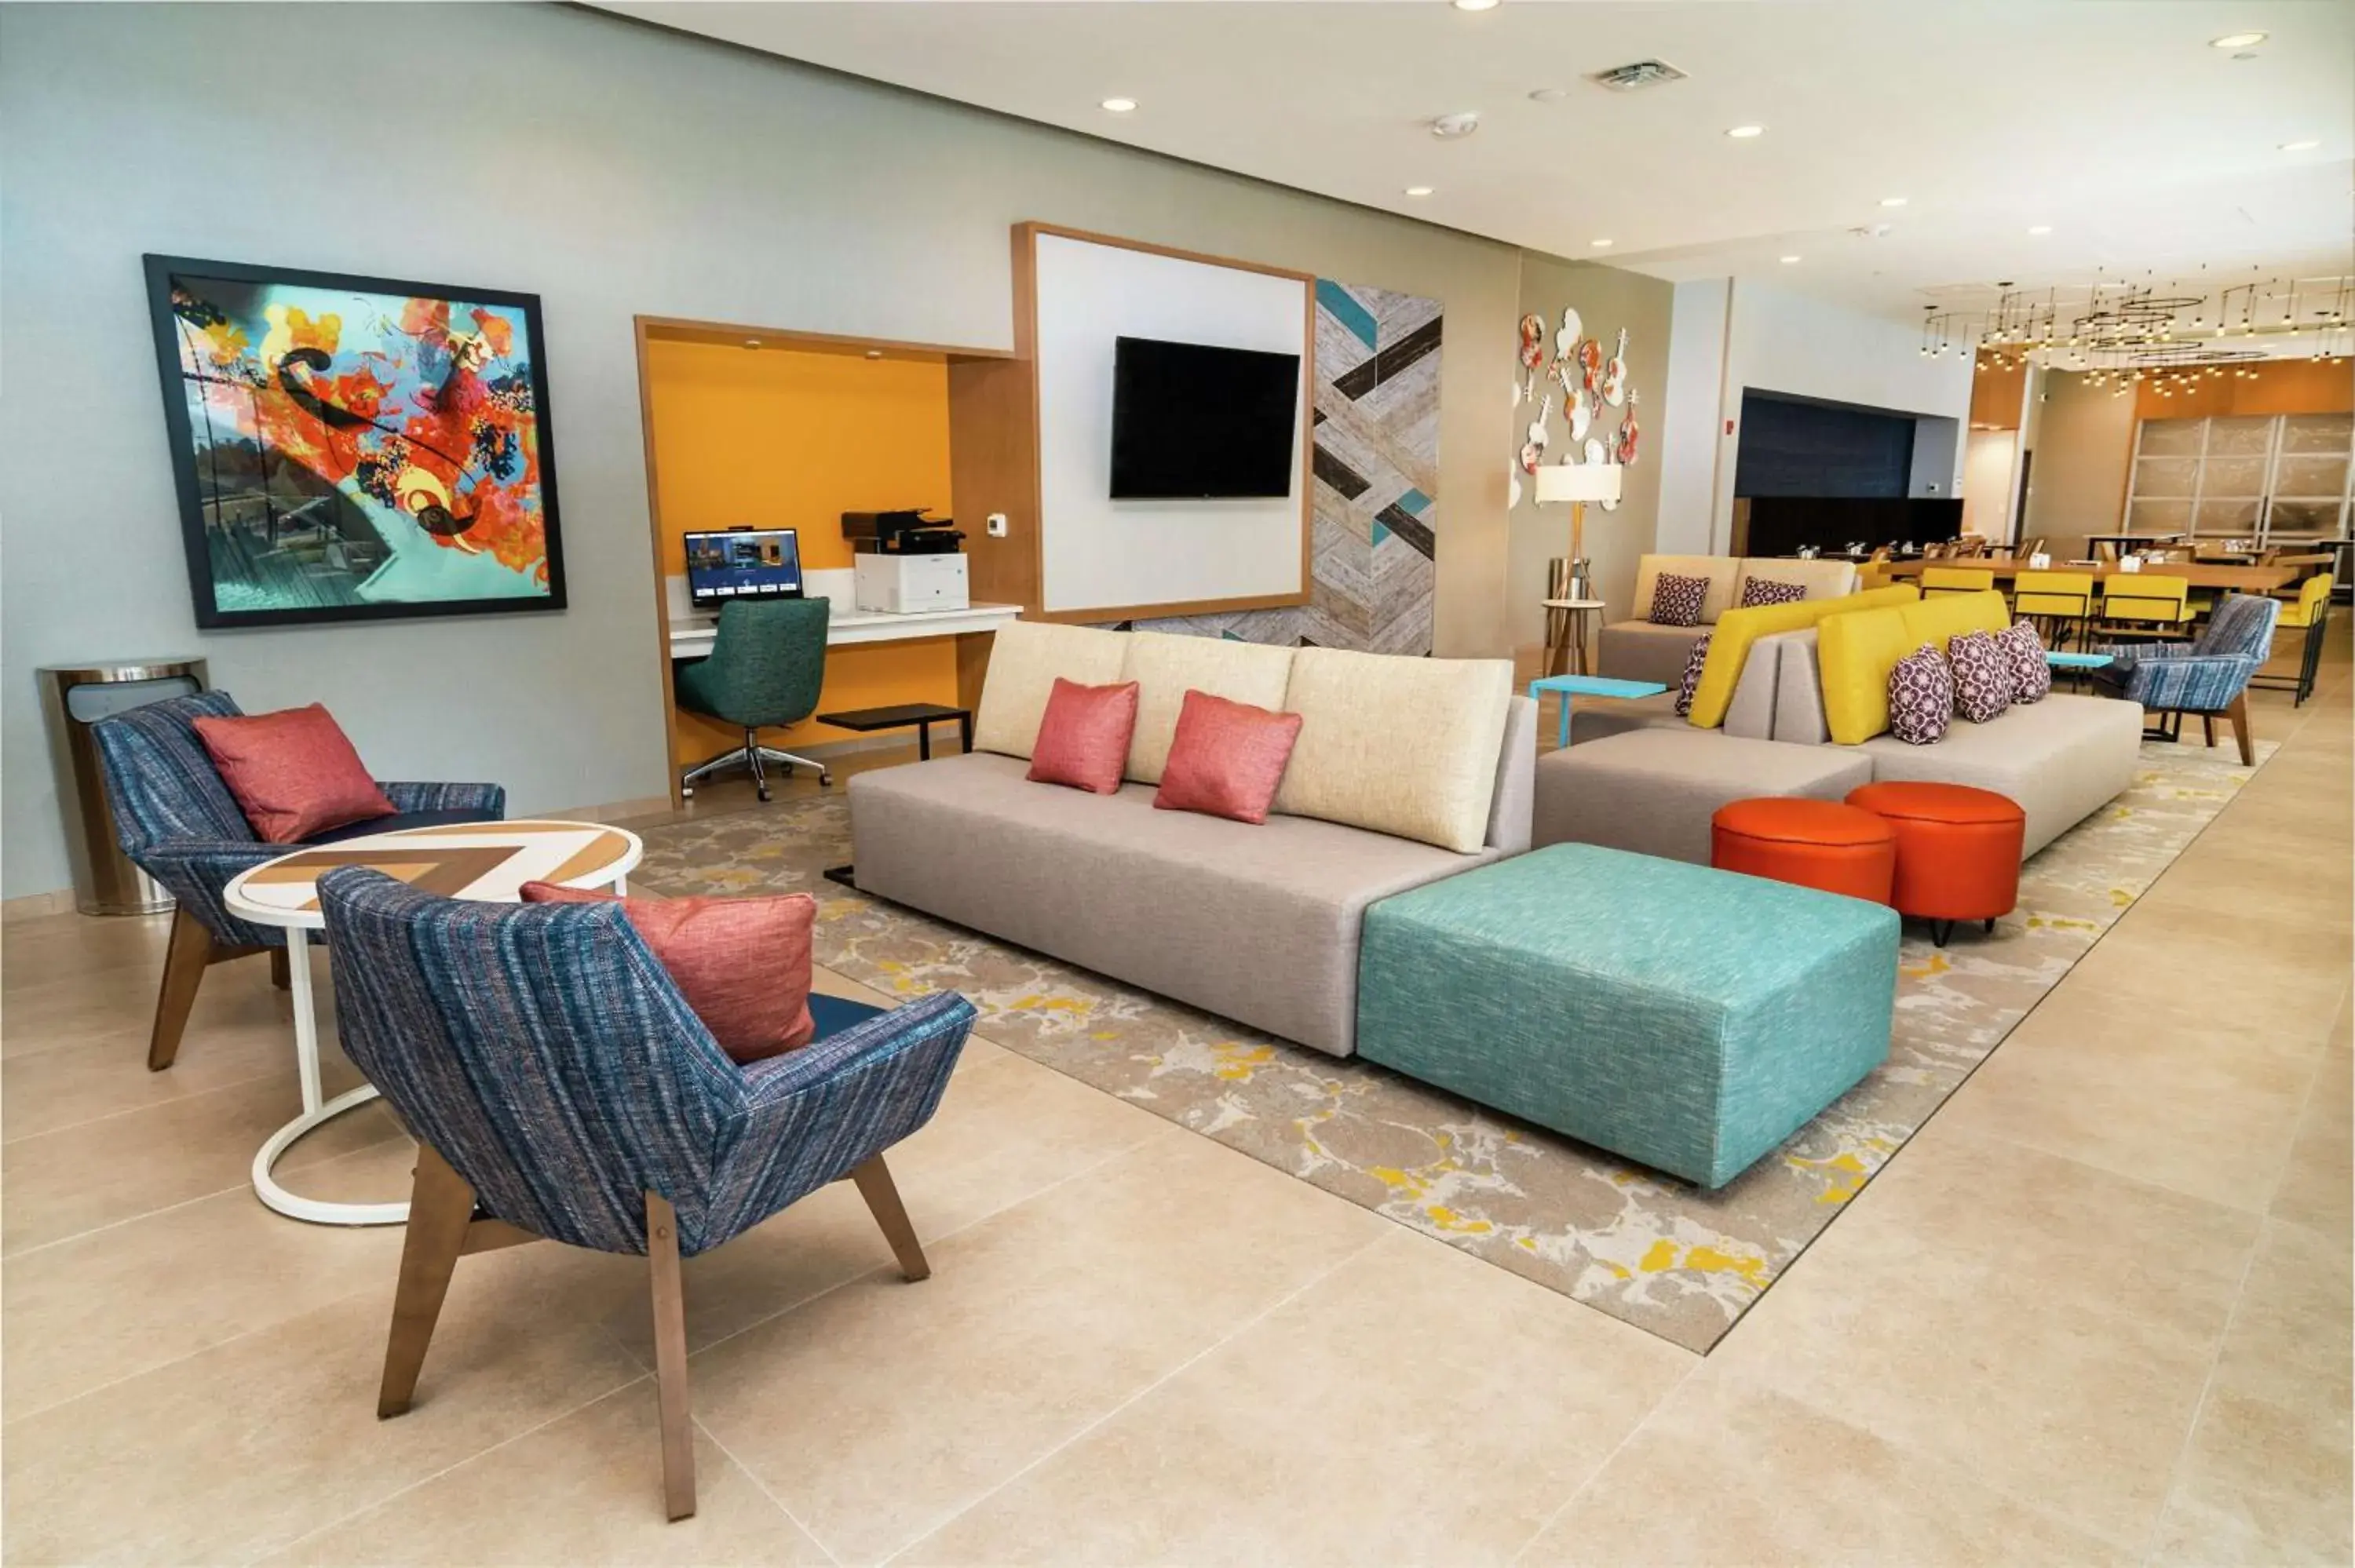 Lobby or reception, Seating Area in Hilton Garden Inn Cedar Park Austin